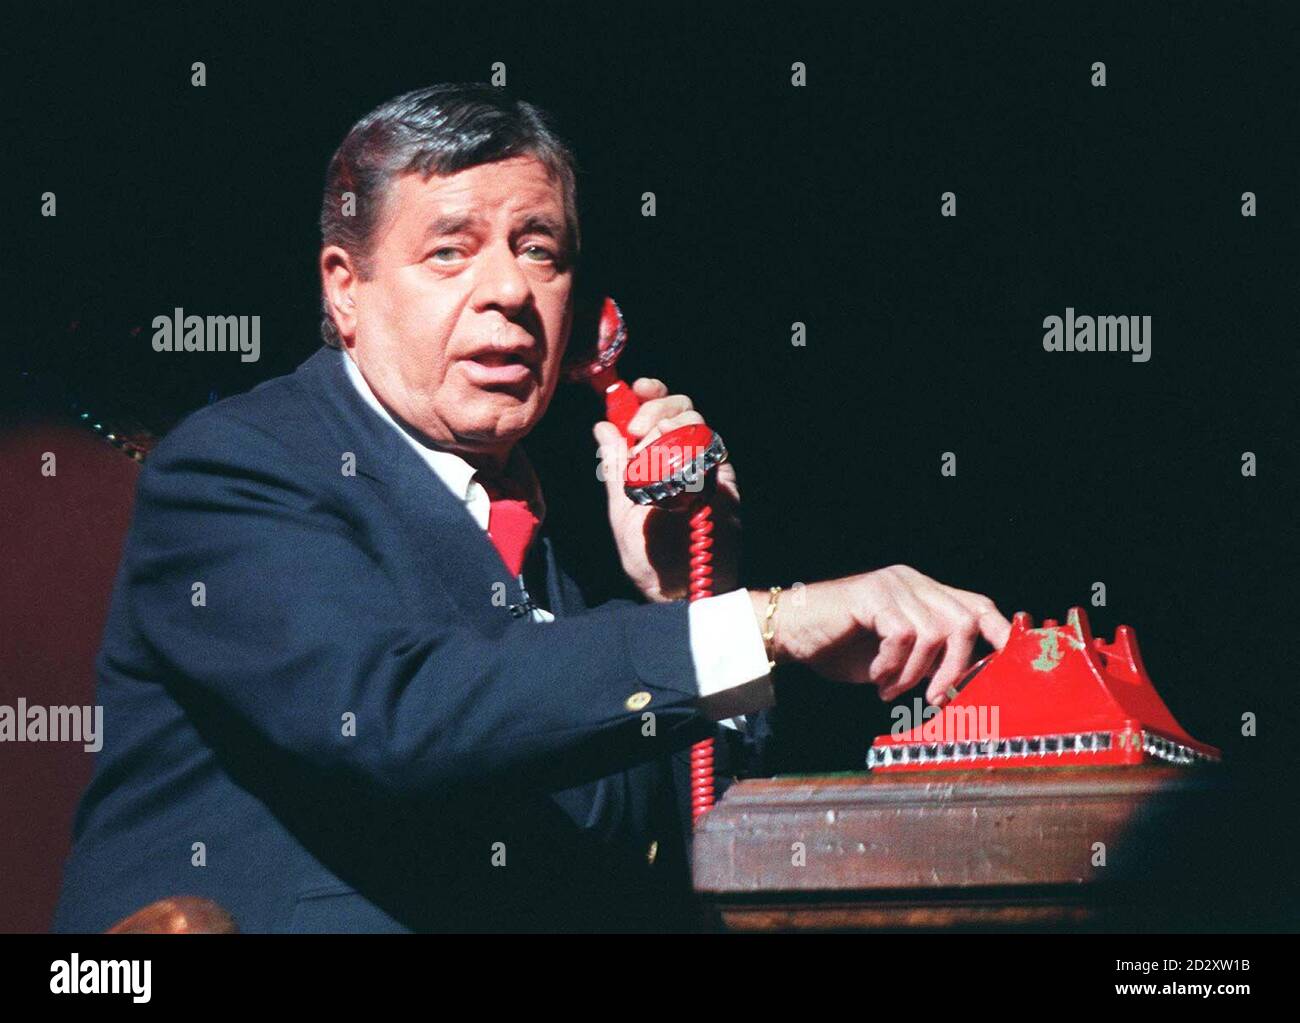 Jerry Lewis, célèbre artiste américain, en personnage et en costume pour ses débuts dans la nouvelle comédie musicale « Damn Yankees », qui débute aujourd'hui au Adelphi Theatre dans le West End de Londres (jeudi). Photo de David Giles/PA. Banque D'Images